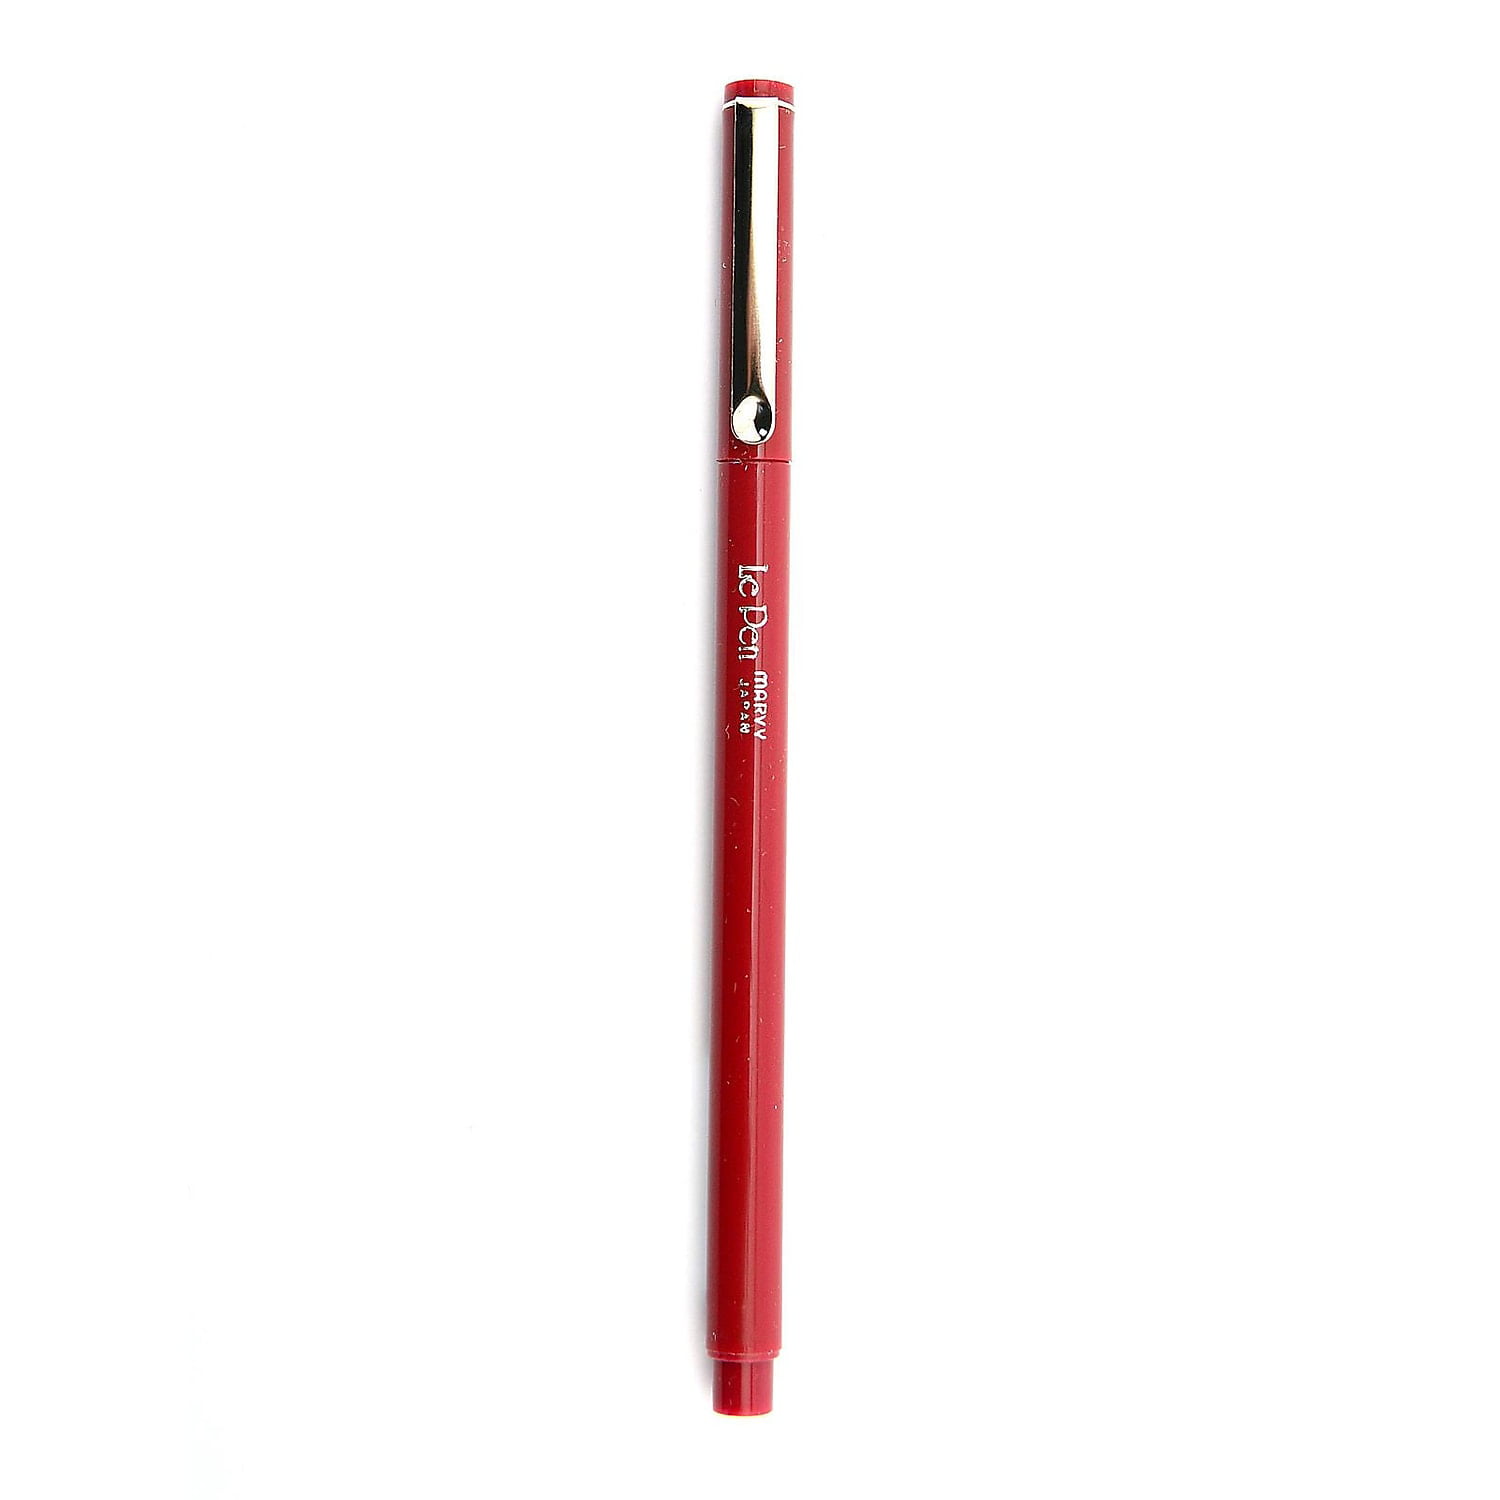 Sakura Pigma Micron Fineliner Pens, Archival Black, 03 Tip Size, 6